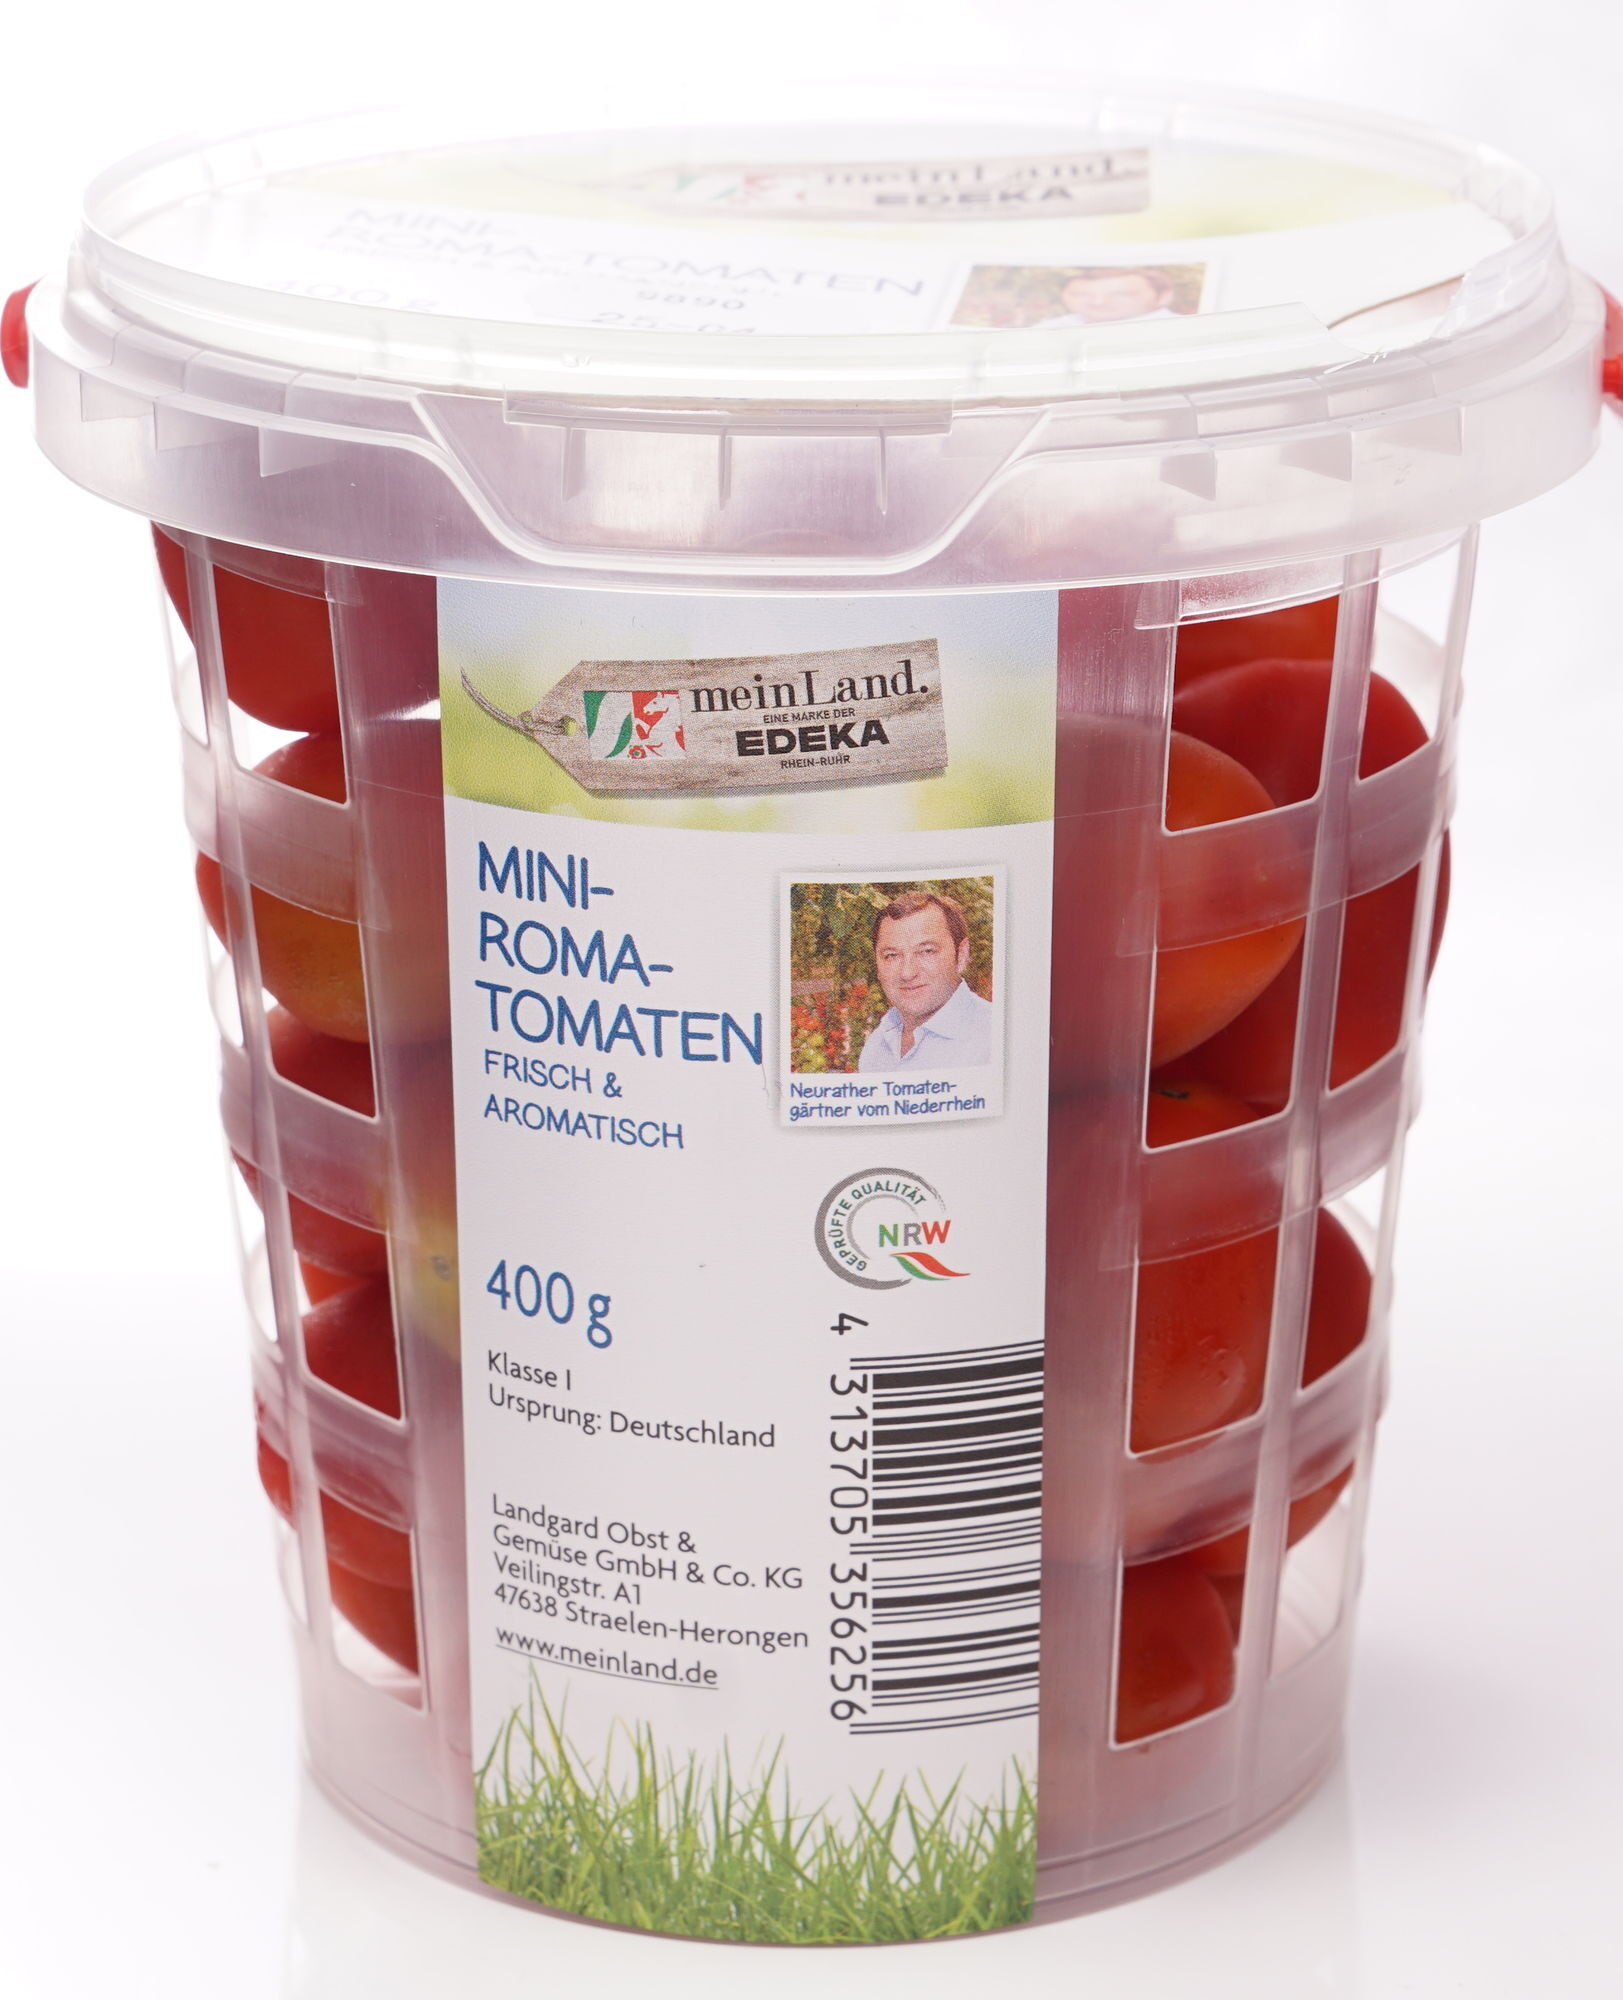 Mini-Roma-Tomaten - Produit - de